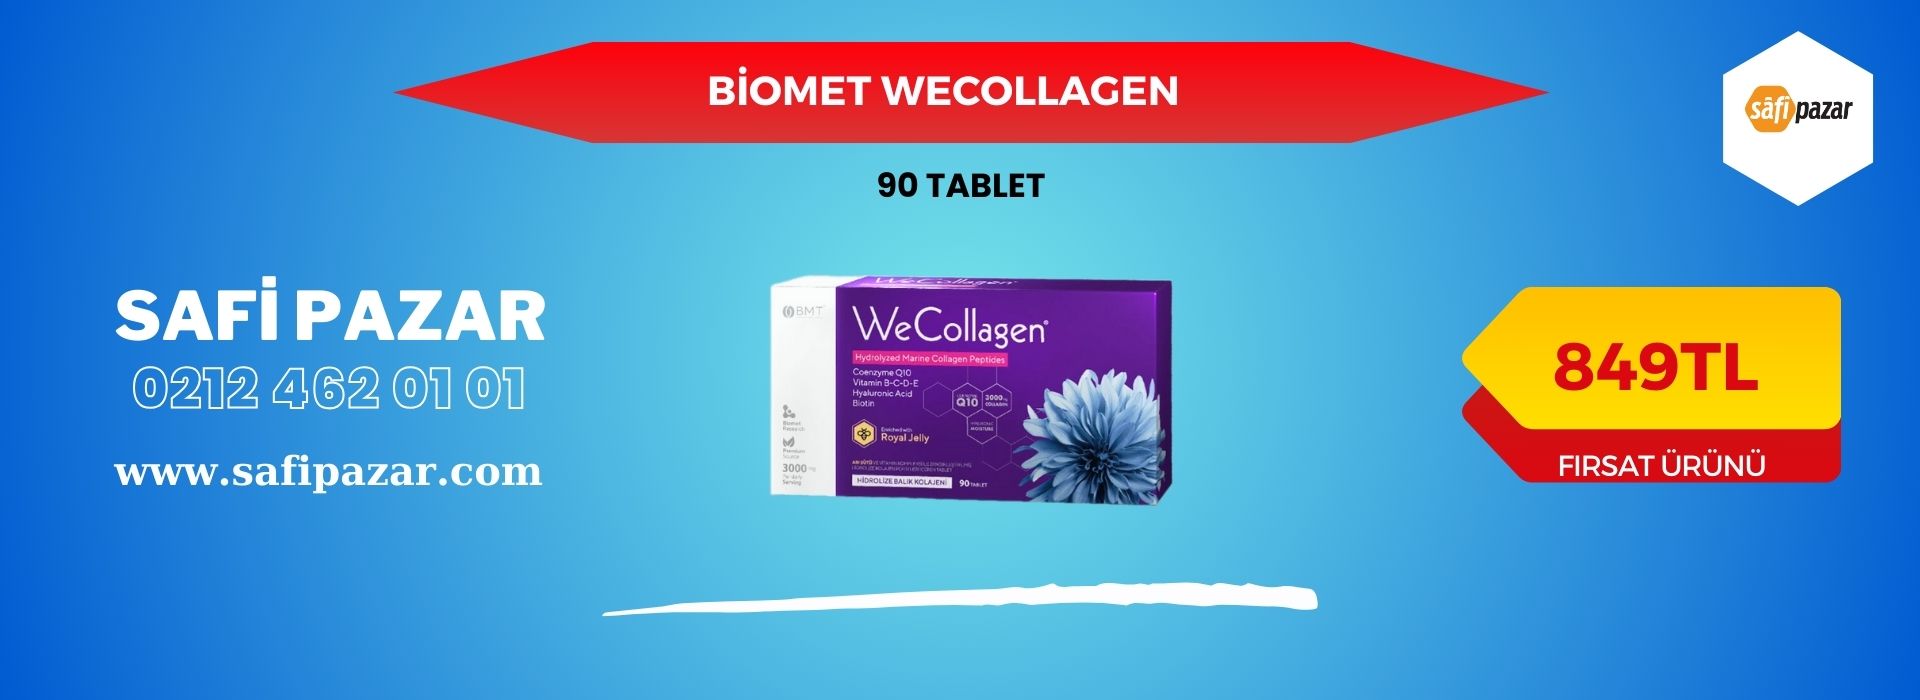 Biomet WeCollagen 90 Tablet